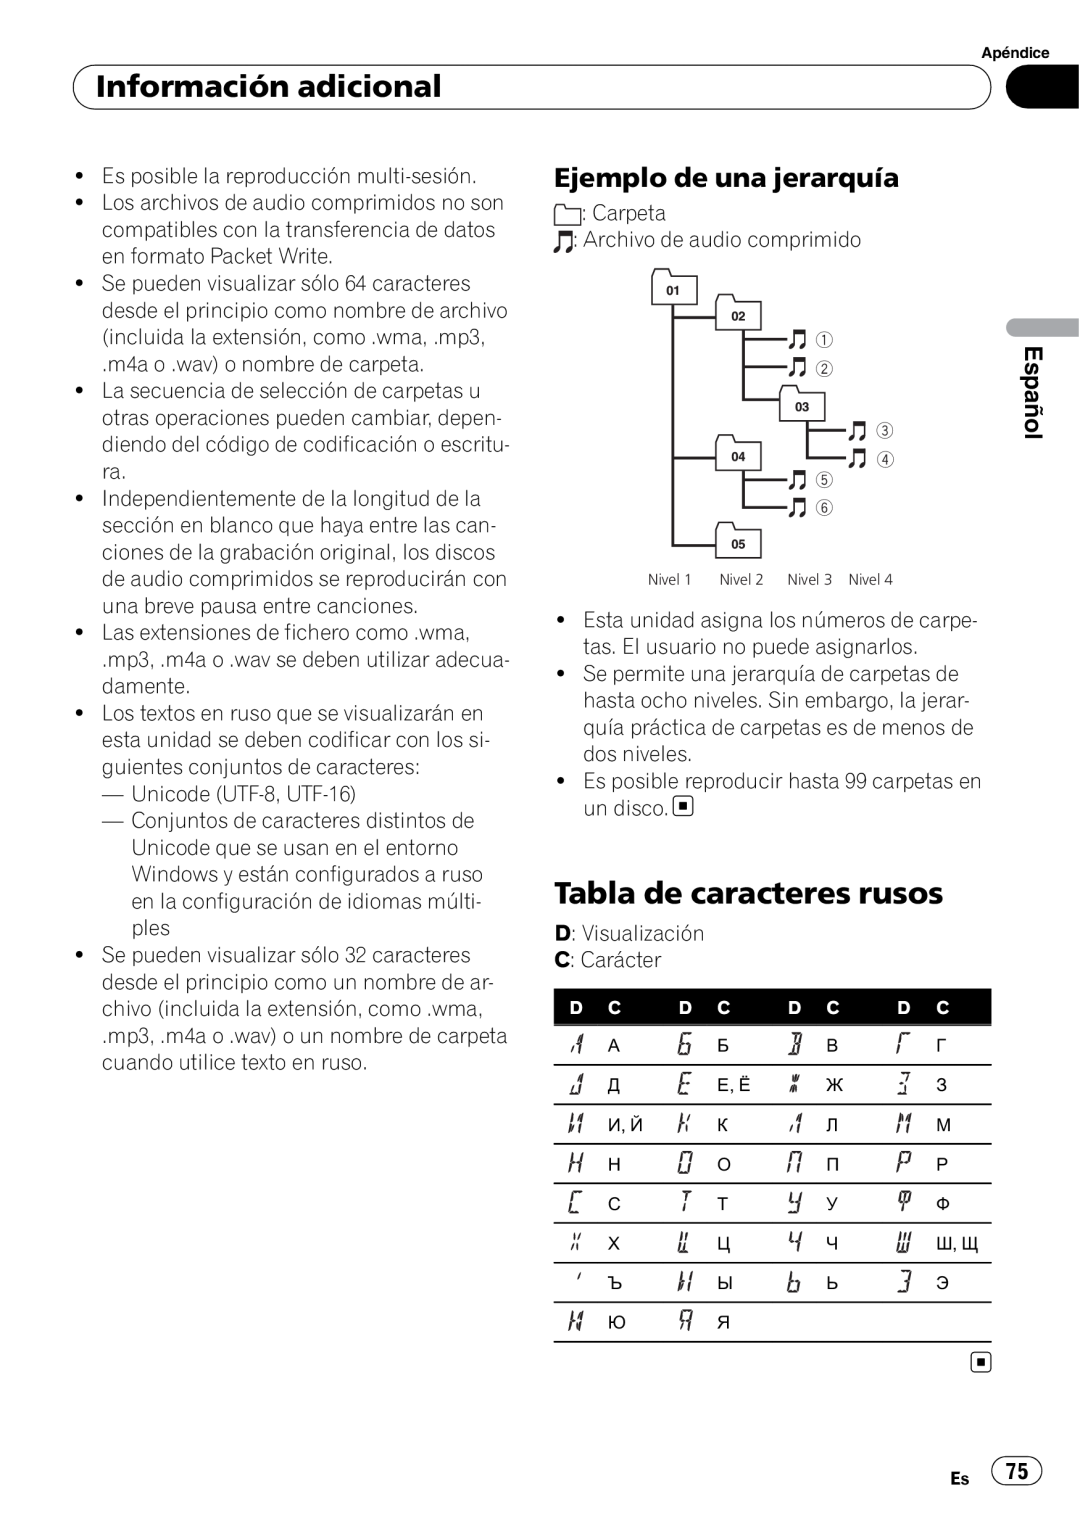 Pioneer DEH-50UB operation manual Tabla de caracteres rusos, Ejemplo de una jerarquía, Información adicional, Español 